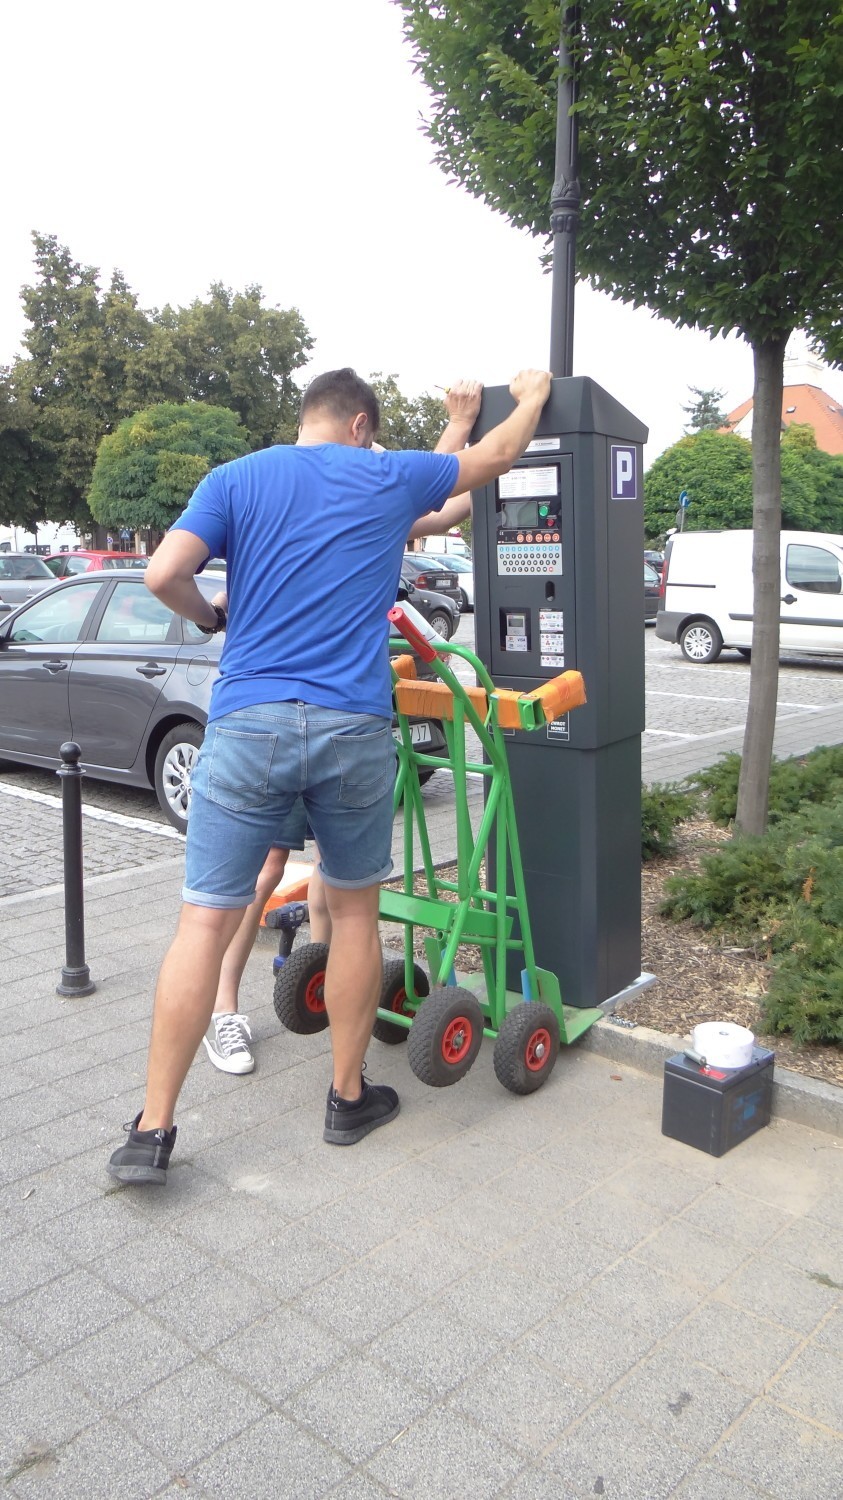 Uruchomiono strefę płatnego parkowania w centrum Łęczycy [ZDJĘCIA]